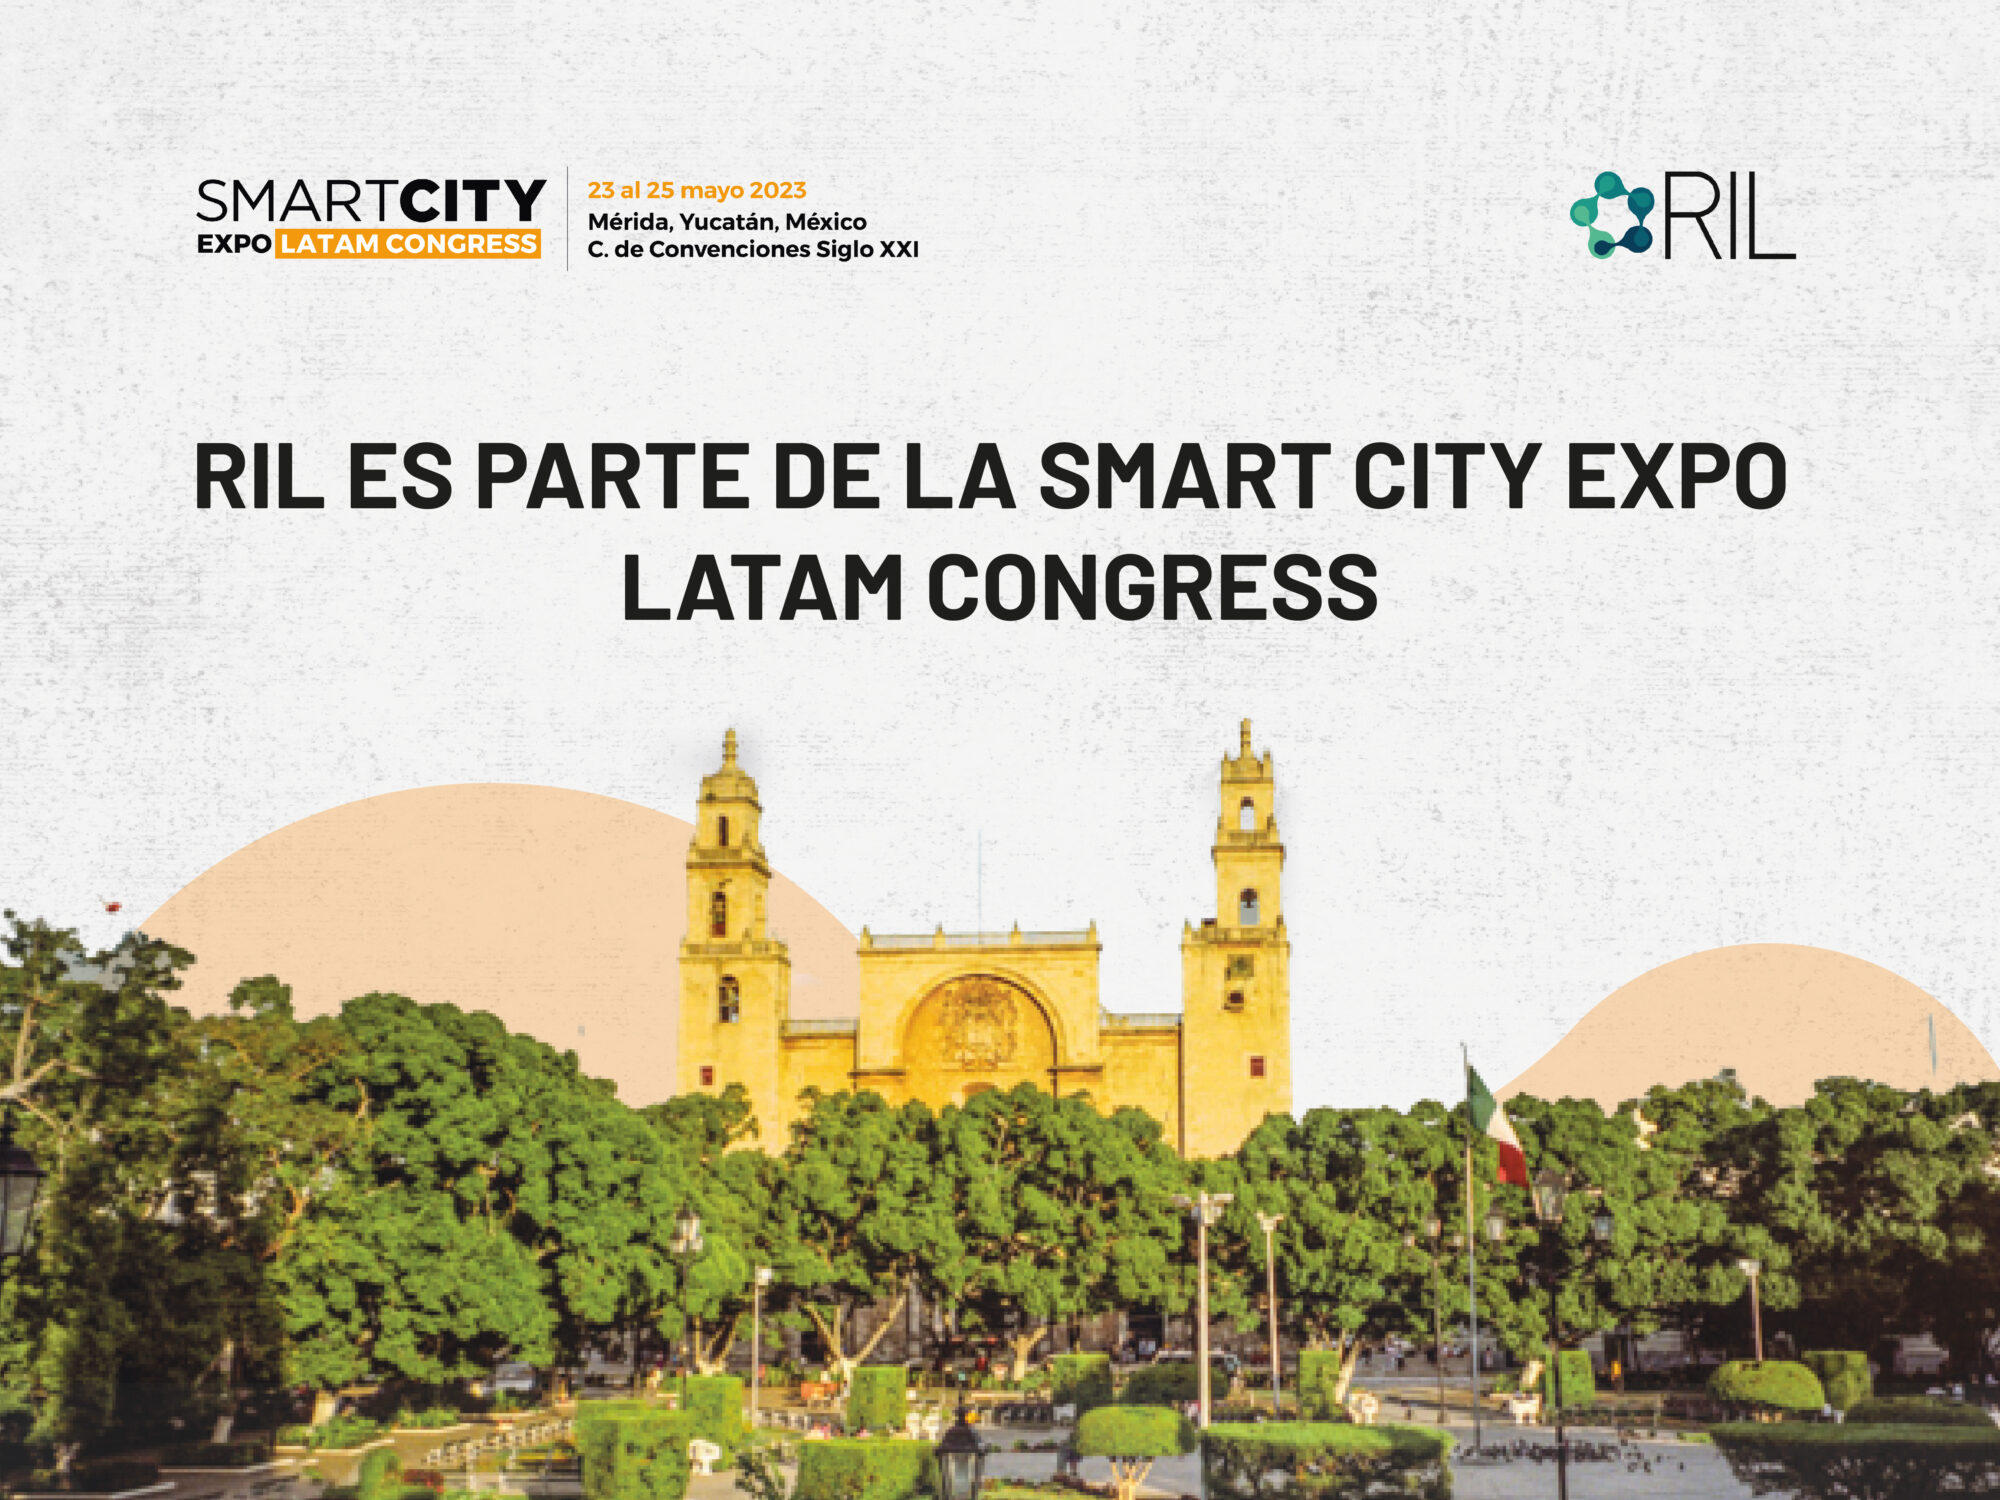 “Proyectos viables, impactos reales”: Mérida vive la octava edición de la Smart City Expo de Latinoamérica